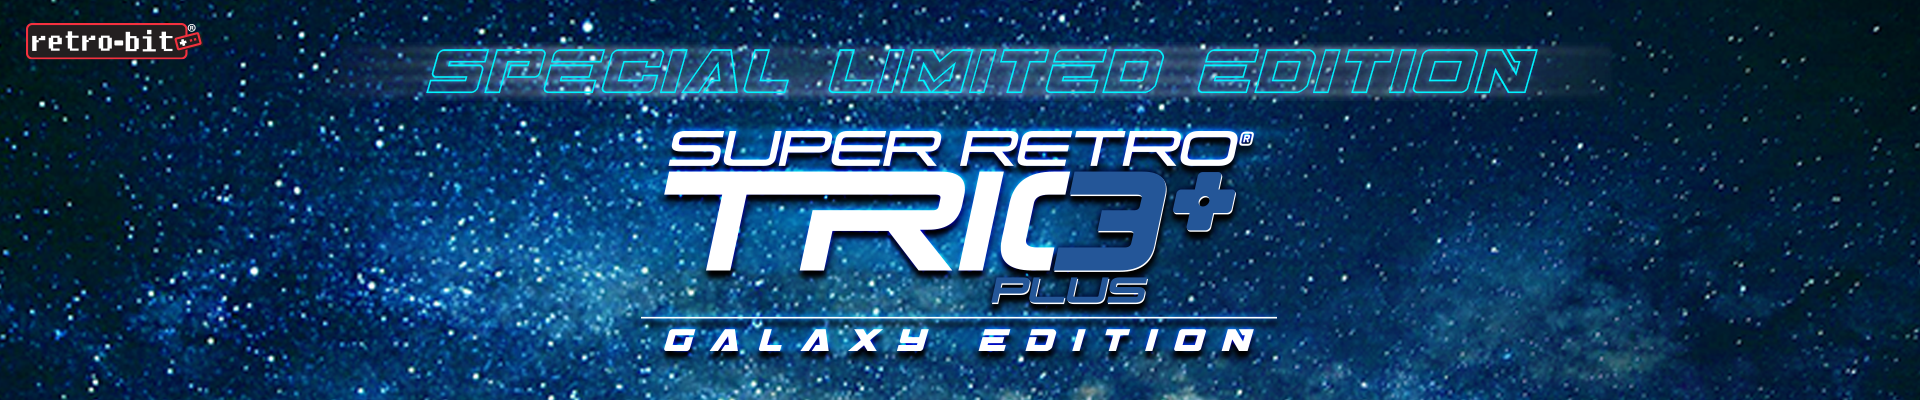 Super Retro Trio Plus - Galaxy Edition